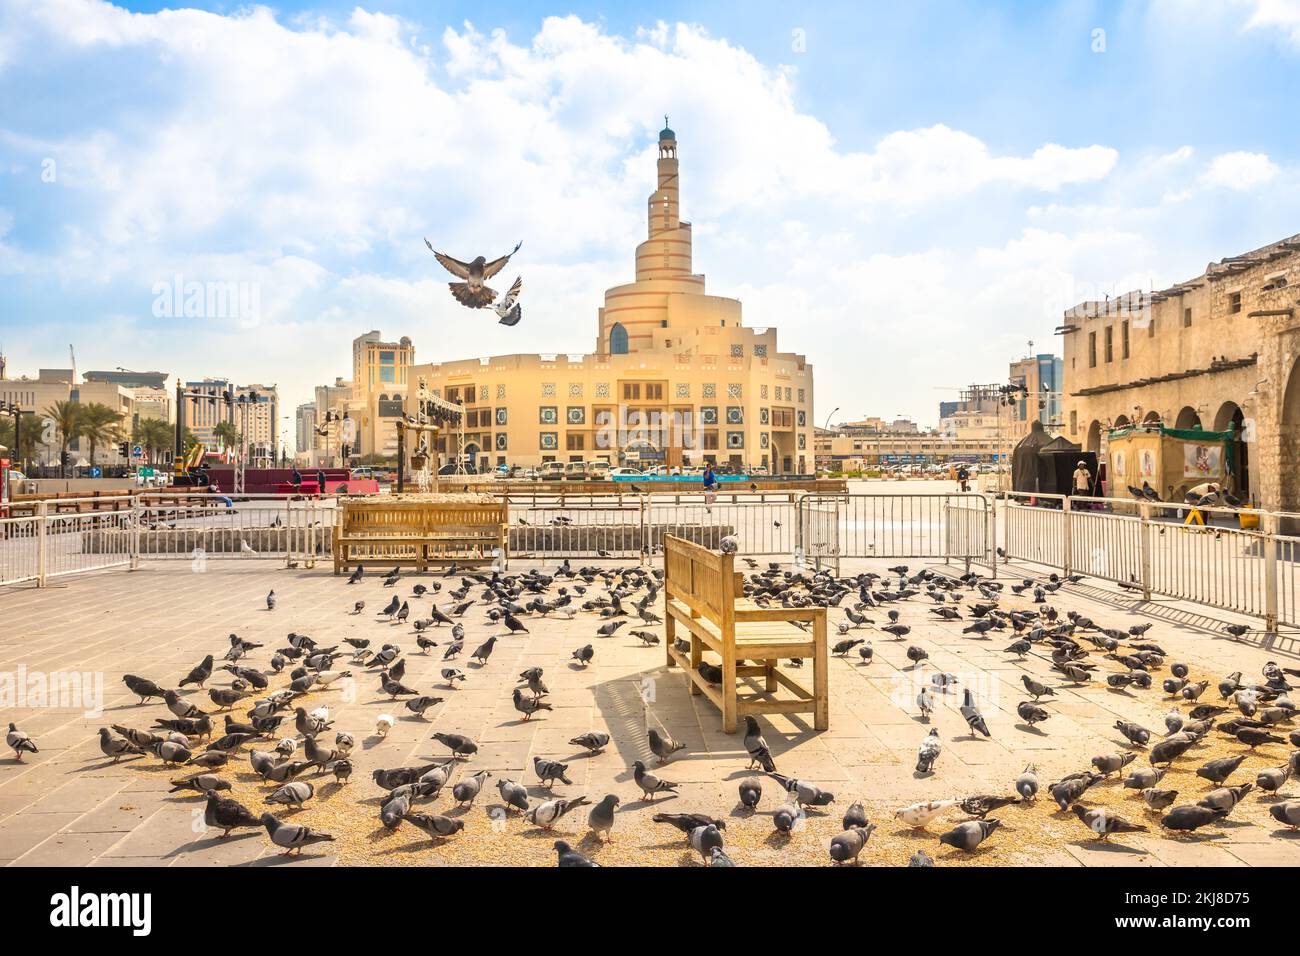 Doha, Katar - 20. Februar 2019: Viele Tauben fliegen im Souk Waqif vor dem Fanar Islamic Cultural Center mit Moschee und Minarett im Hintergrund Stockfoto